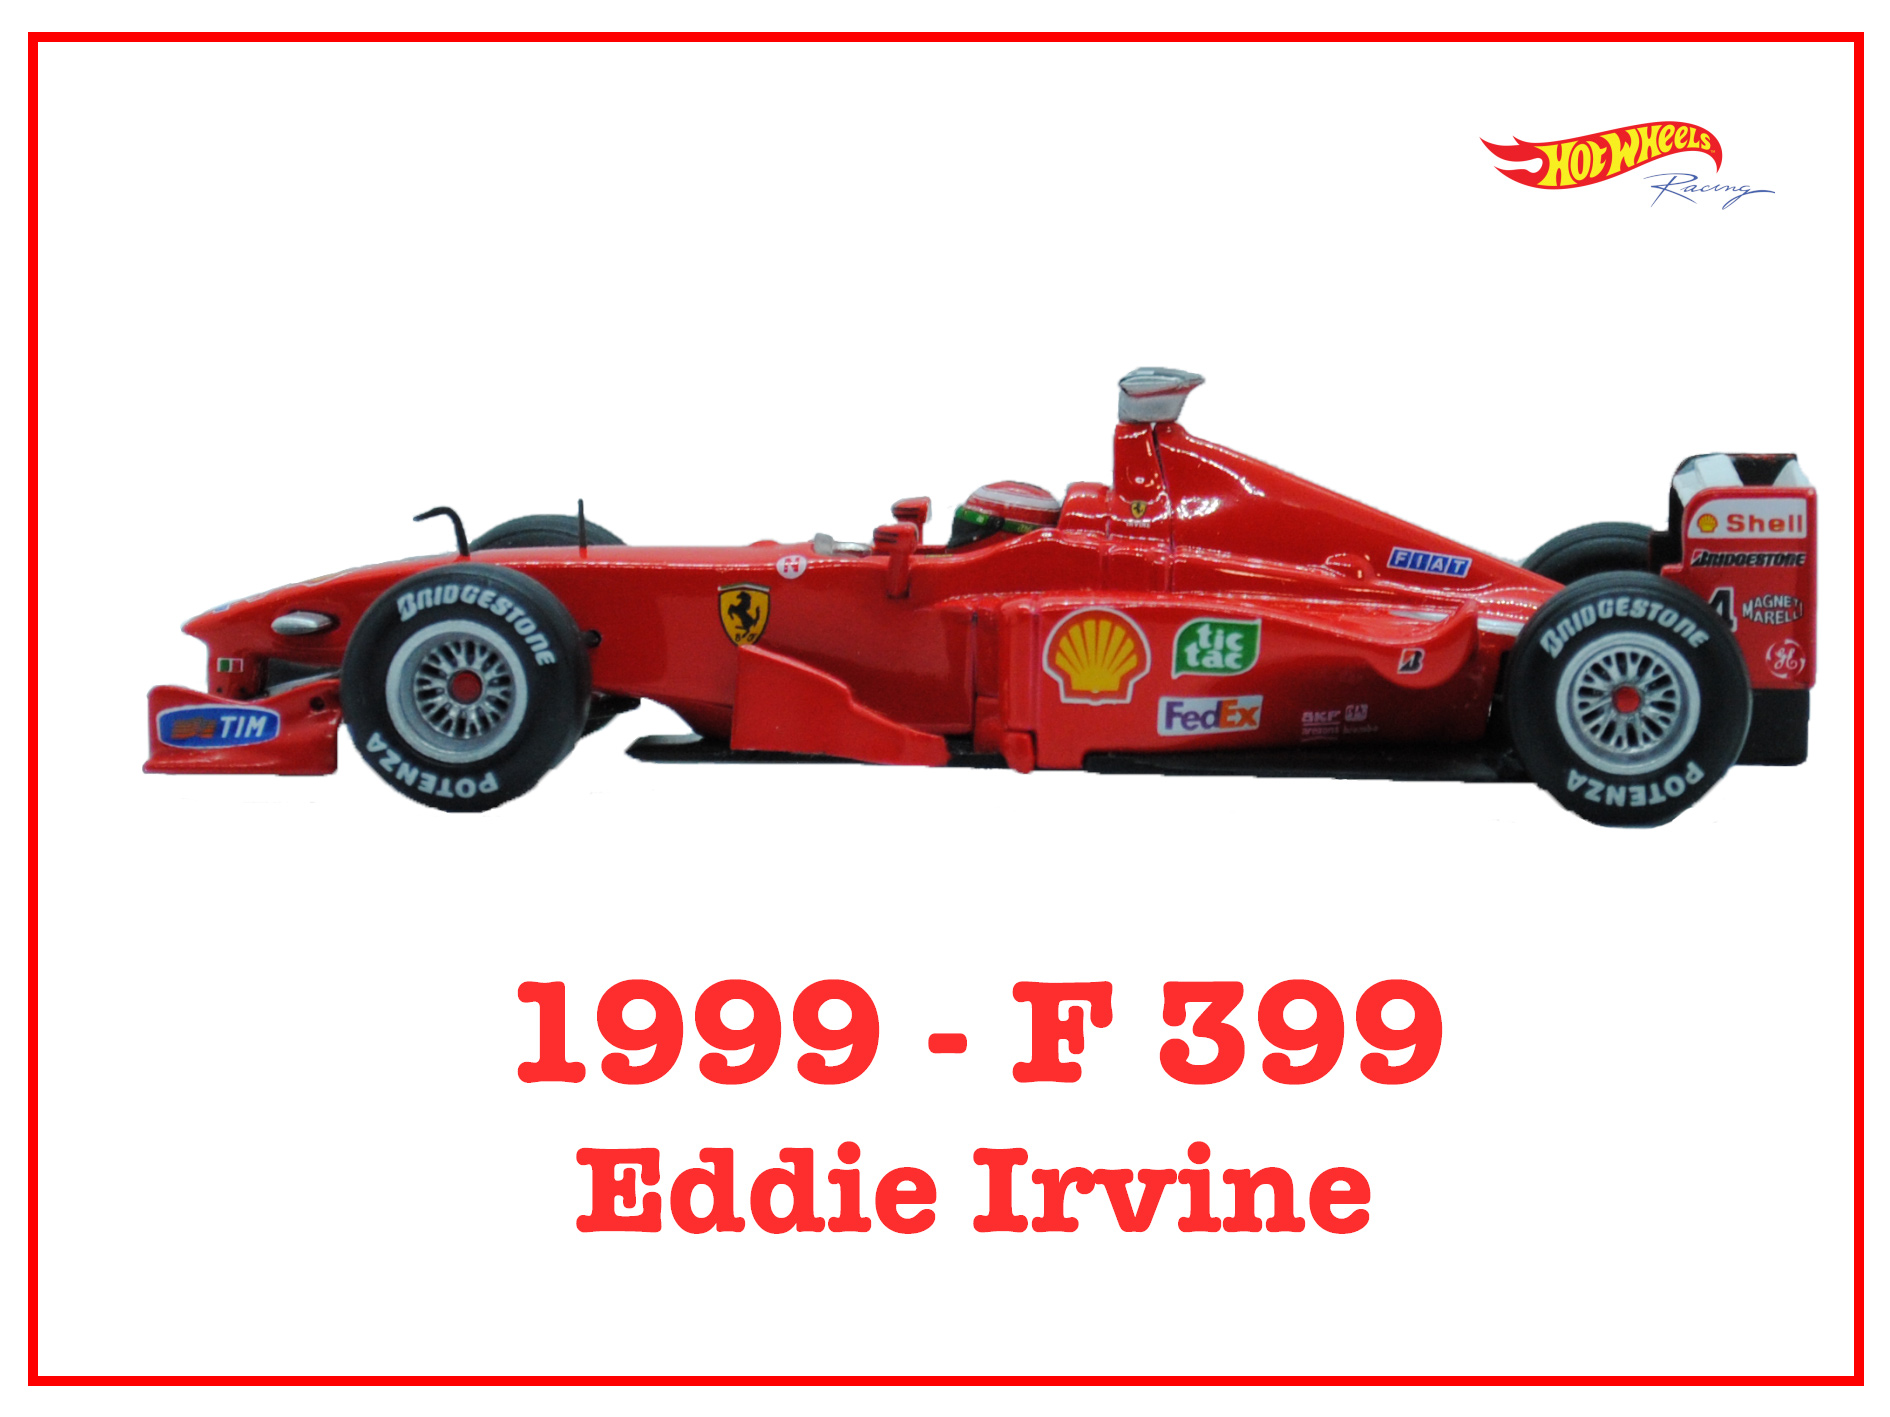 Immagine Ferrari F399 Eddie Irvine